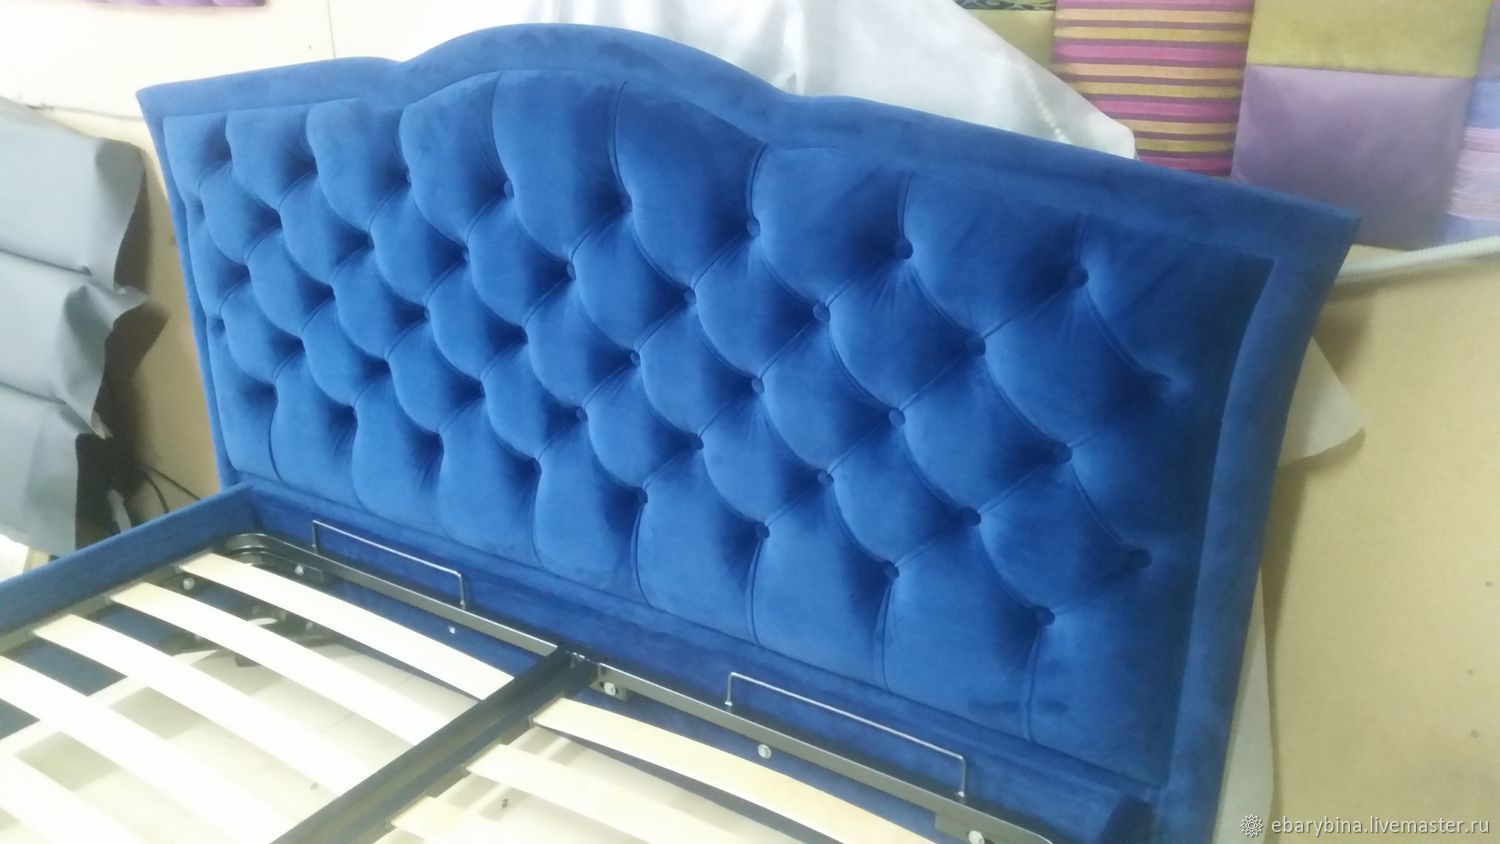 Синяя кровать в каретной стяжке, Кровати, Нахабино,  Фото №1